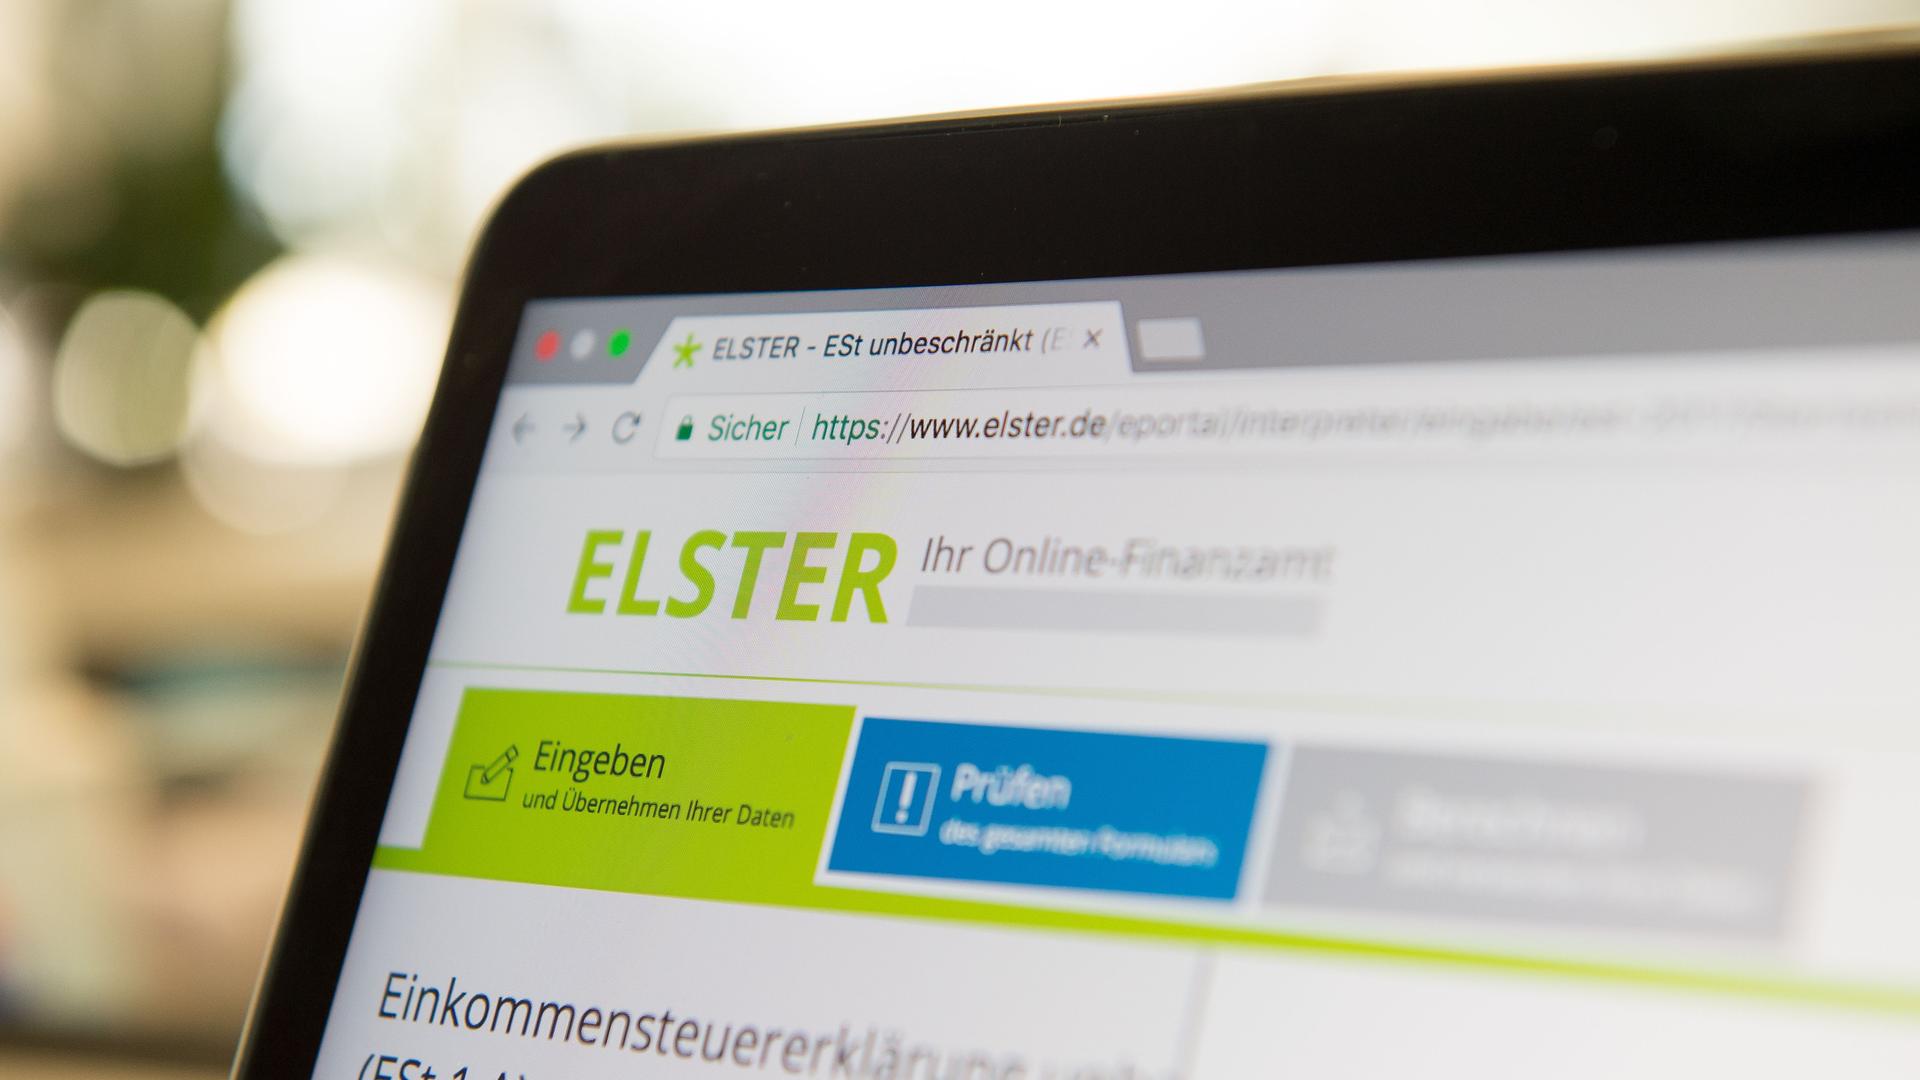 Berlin: Die Steuer-Plattform "Elster" ist auf dem Bildschirm eines Laptops zu sehen. 